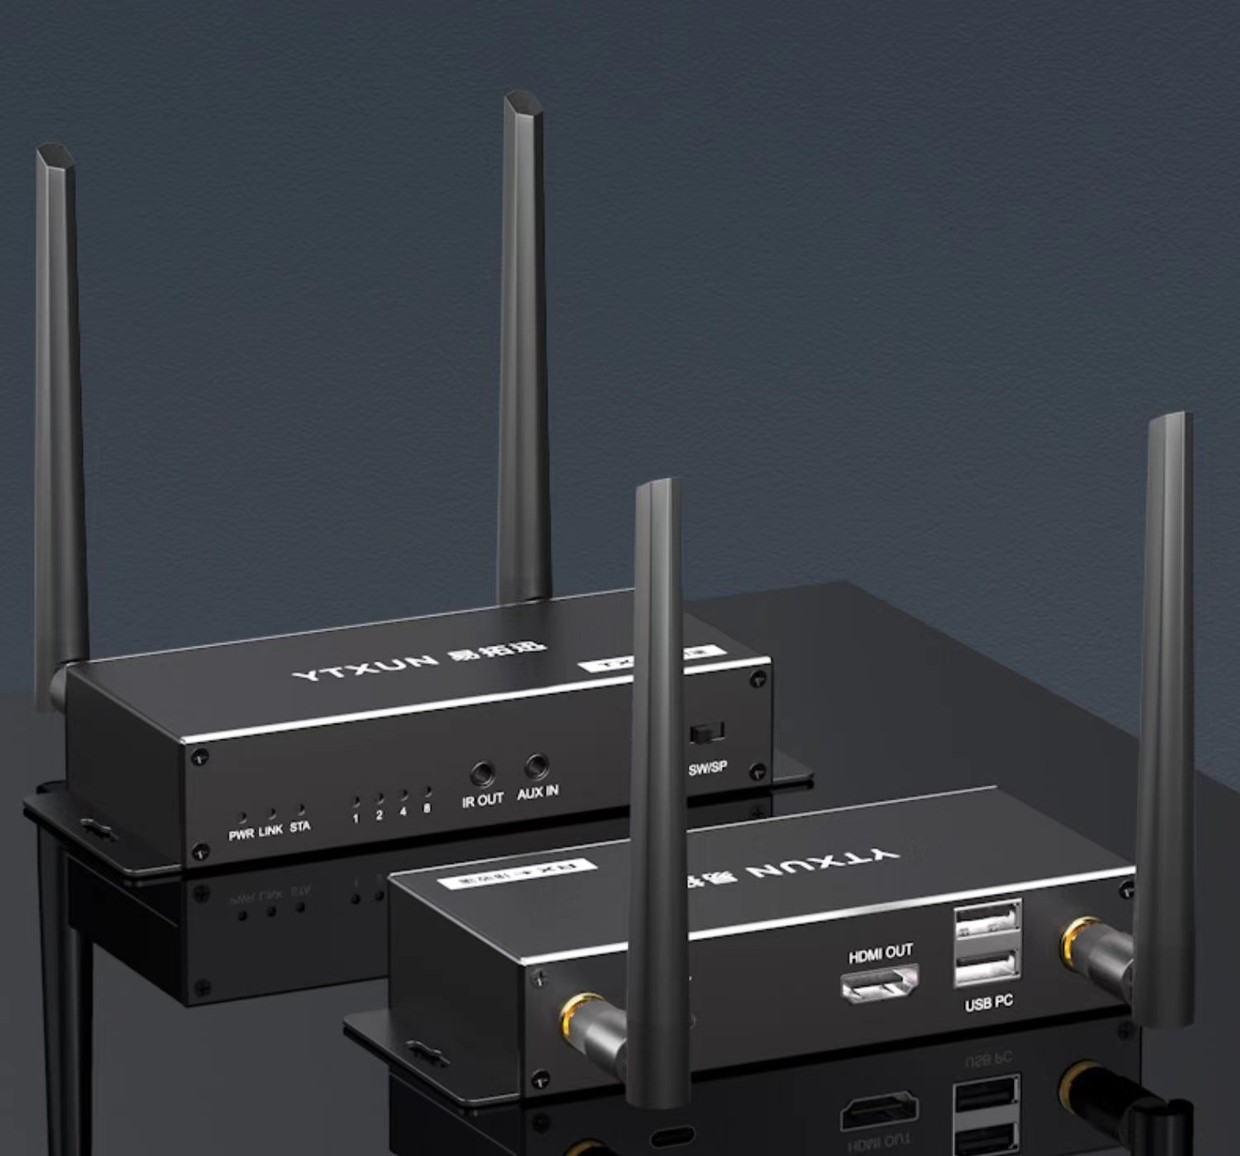 HWE-200: Wireless 4K HDMI KVM 200 meter extender